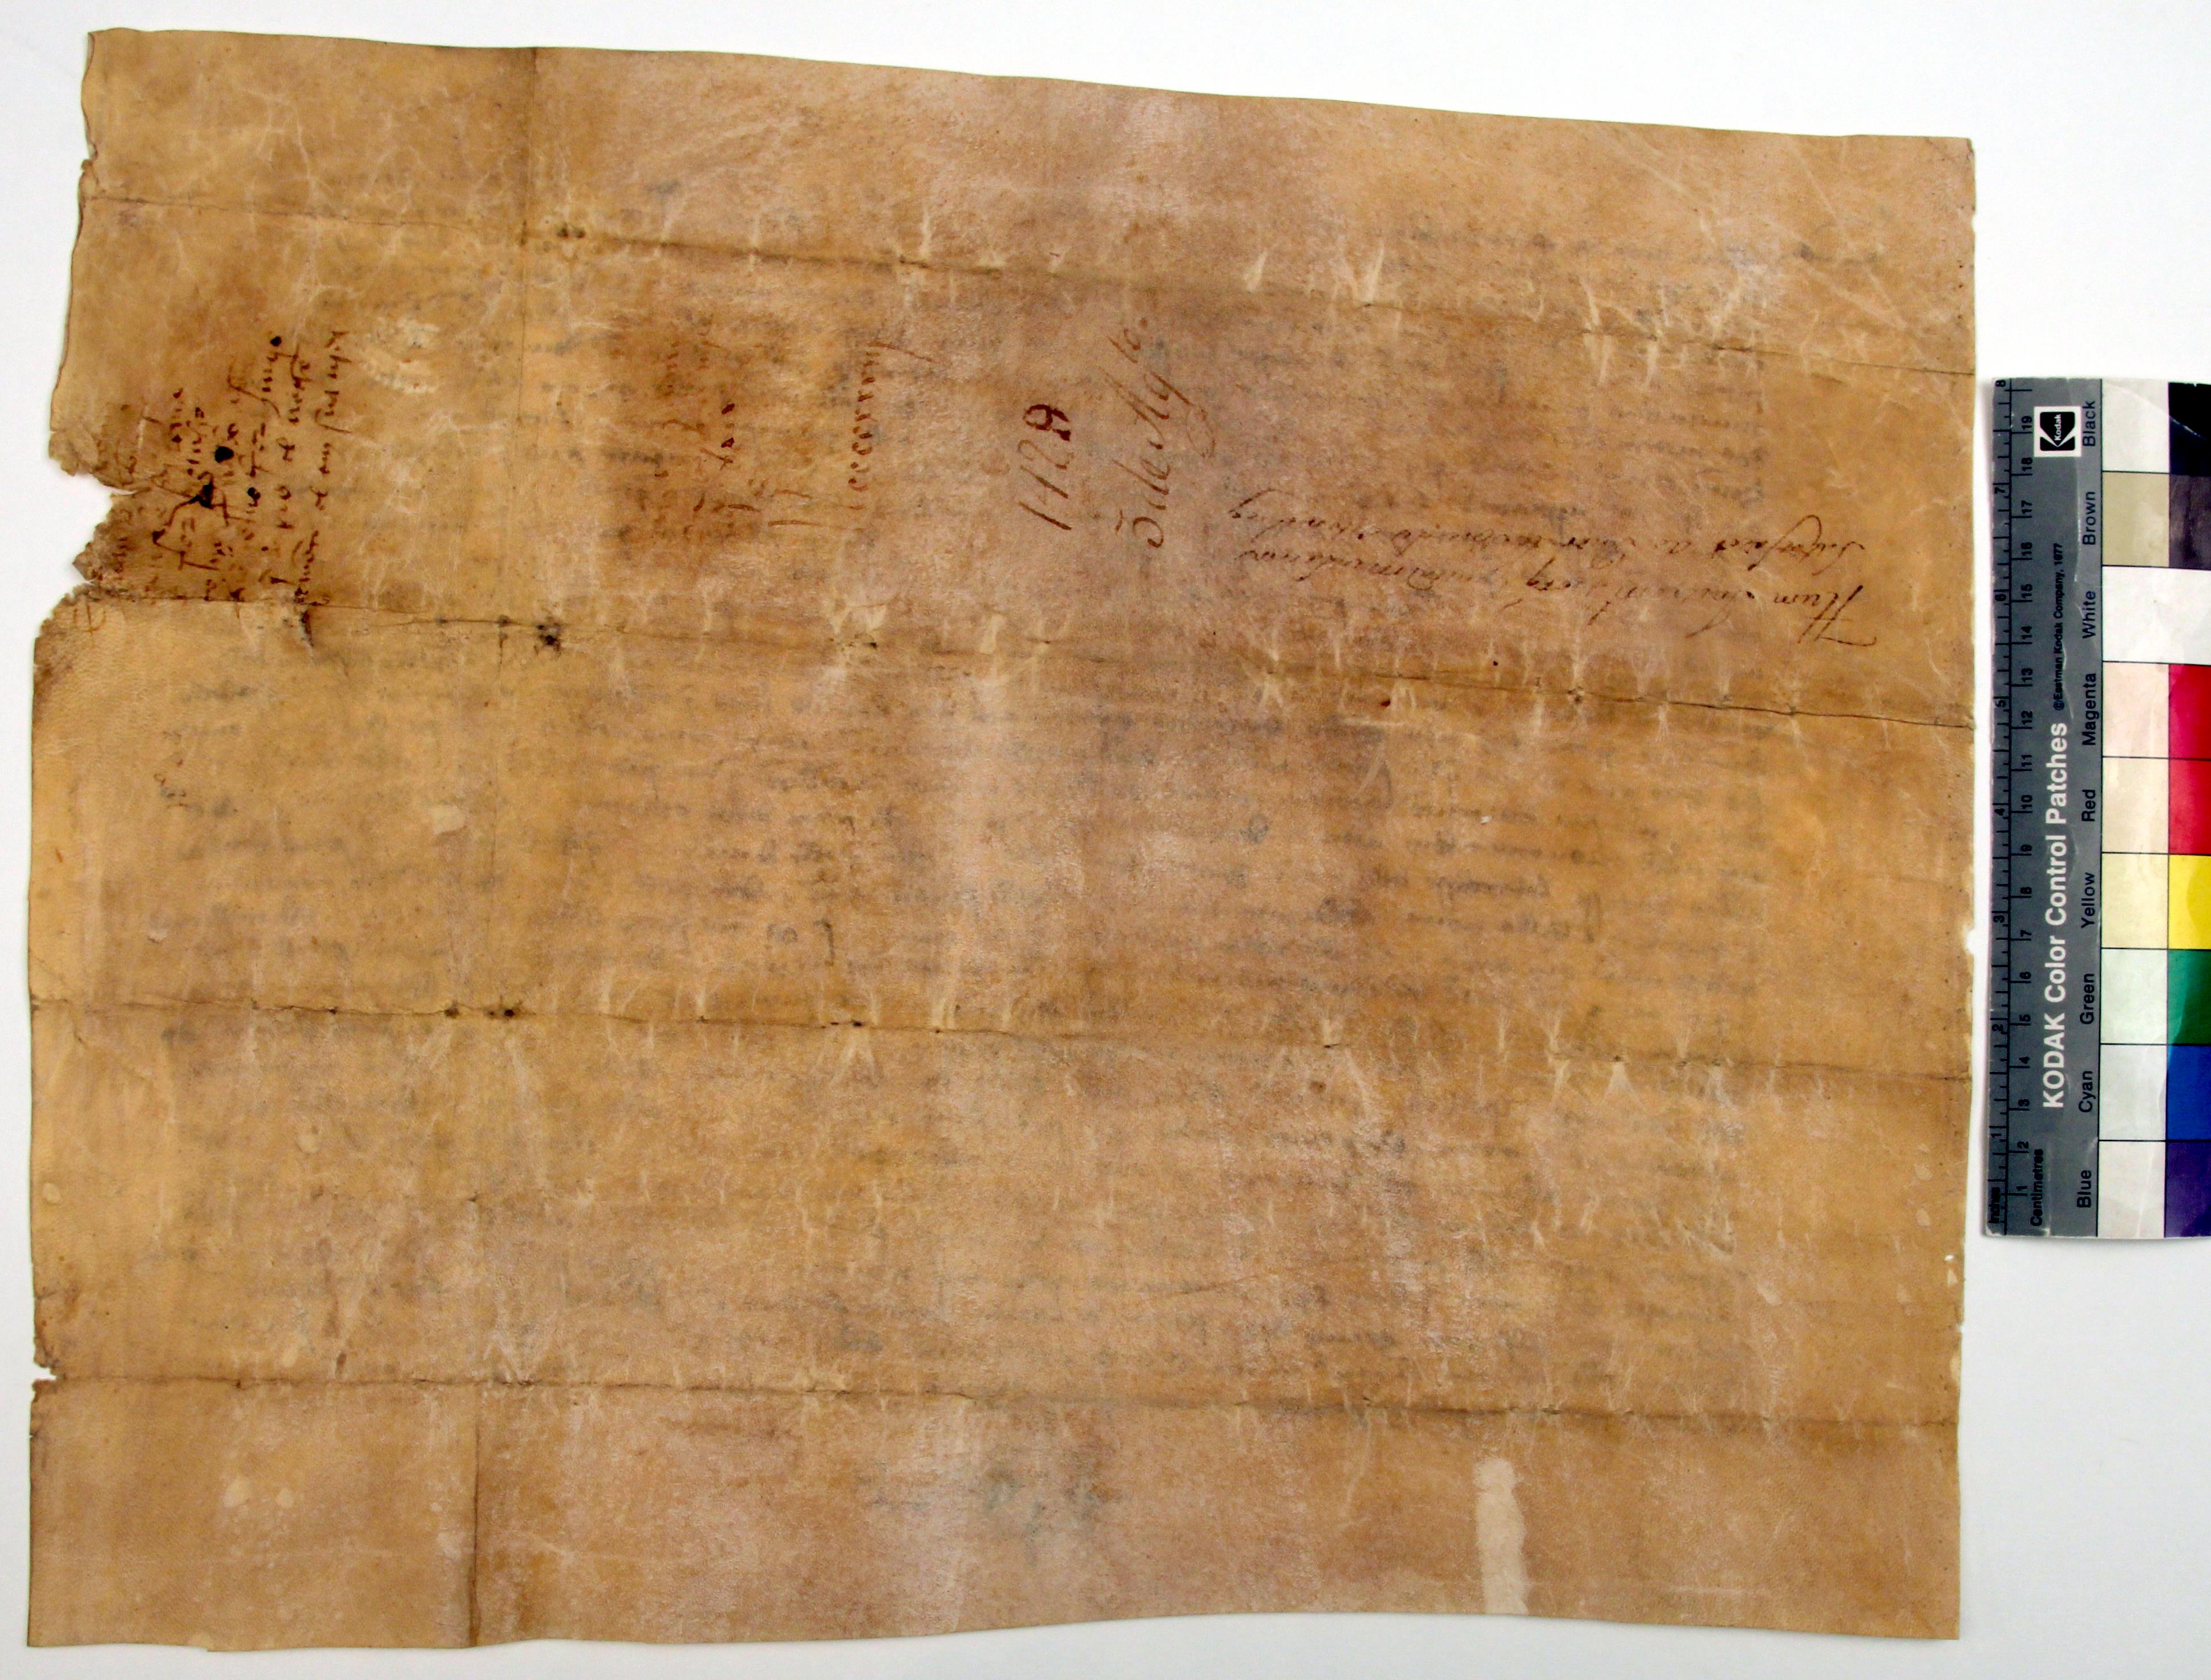 [Carta da Câmara do Porto a D. Fernando Afonso, prior do mosteiro de Ancede, sobre a comercialização de vinho]